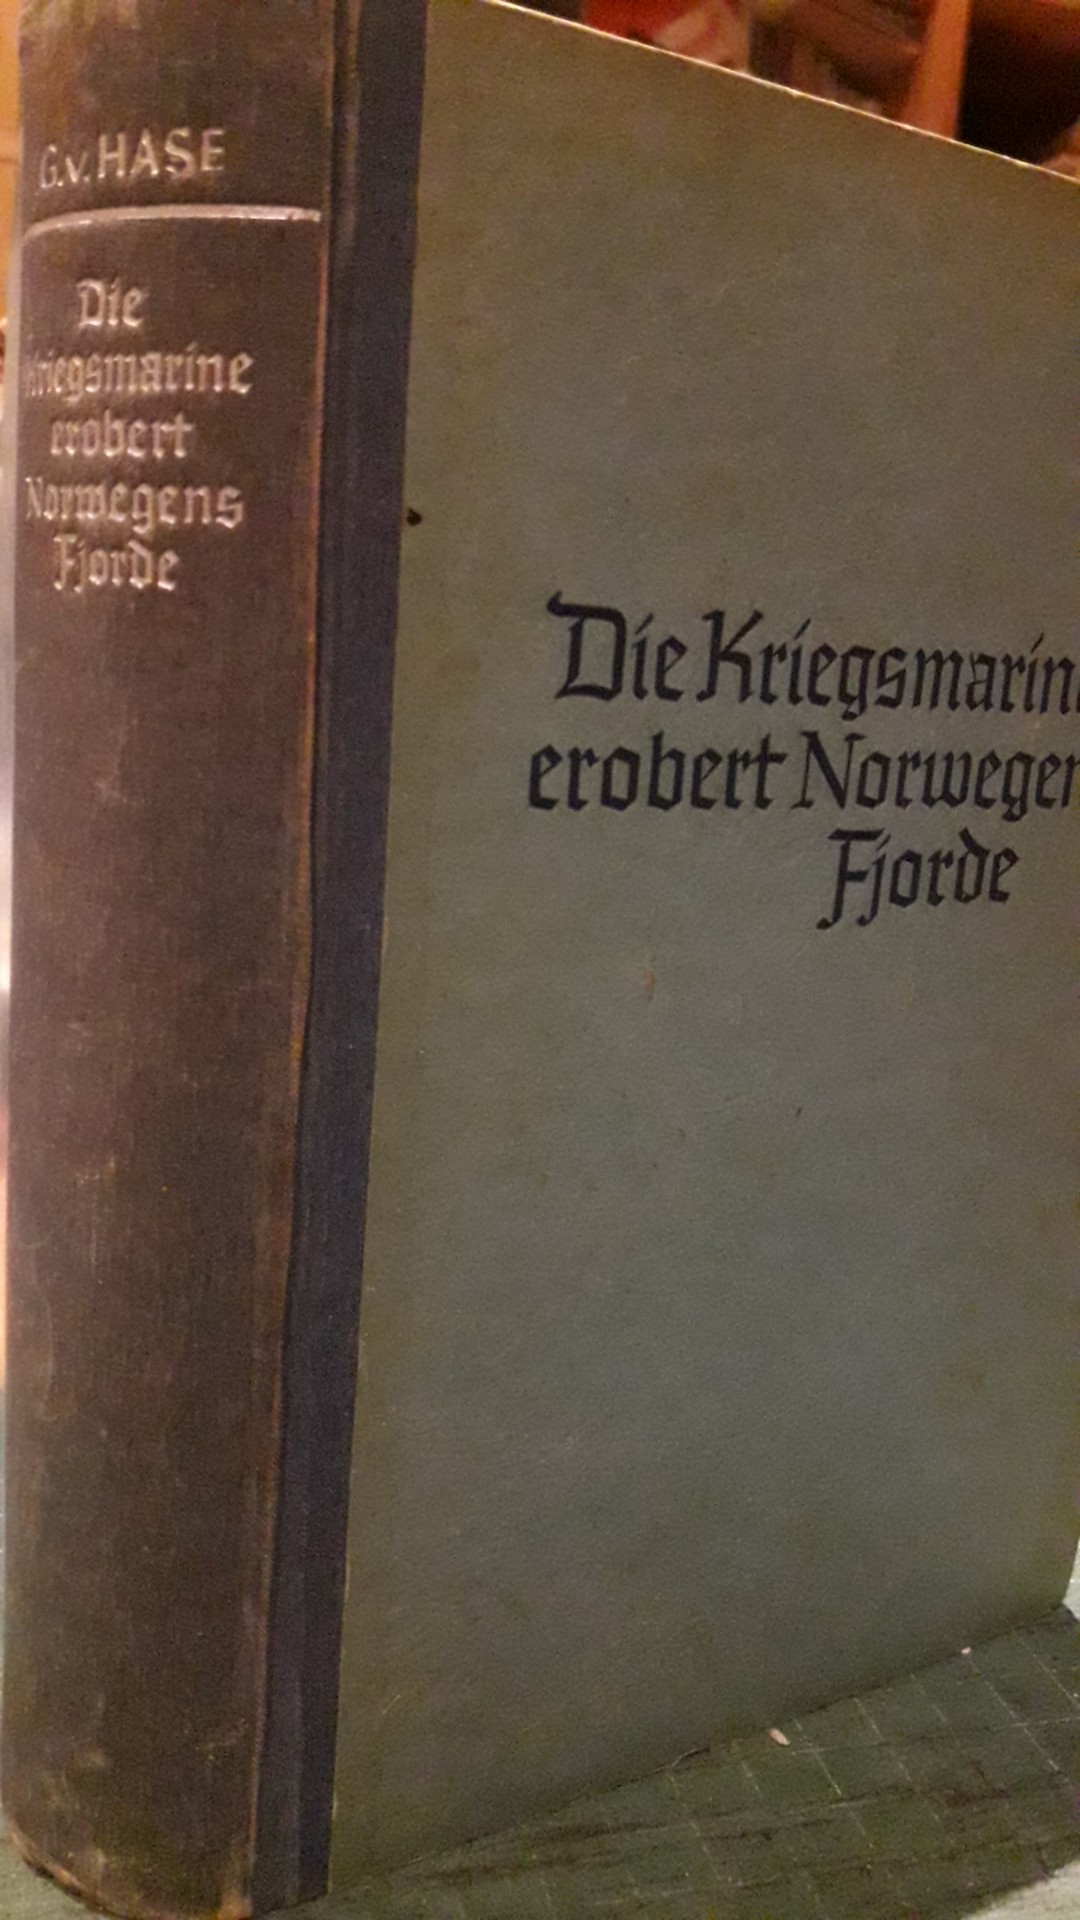 Die Kriegsmarine erobert Norwegens Fjorde - uitgave 1940 / 416 blz